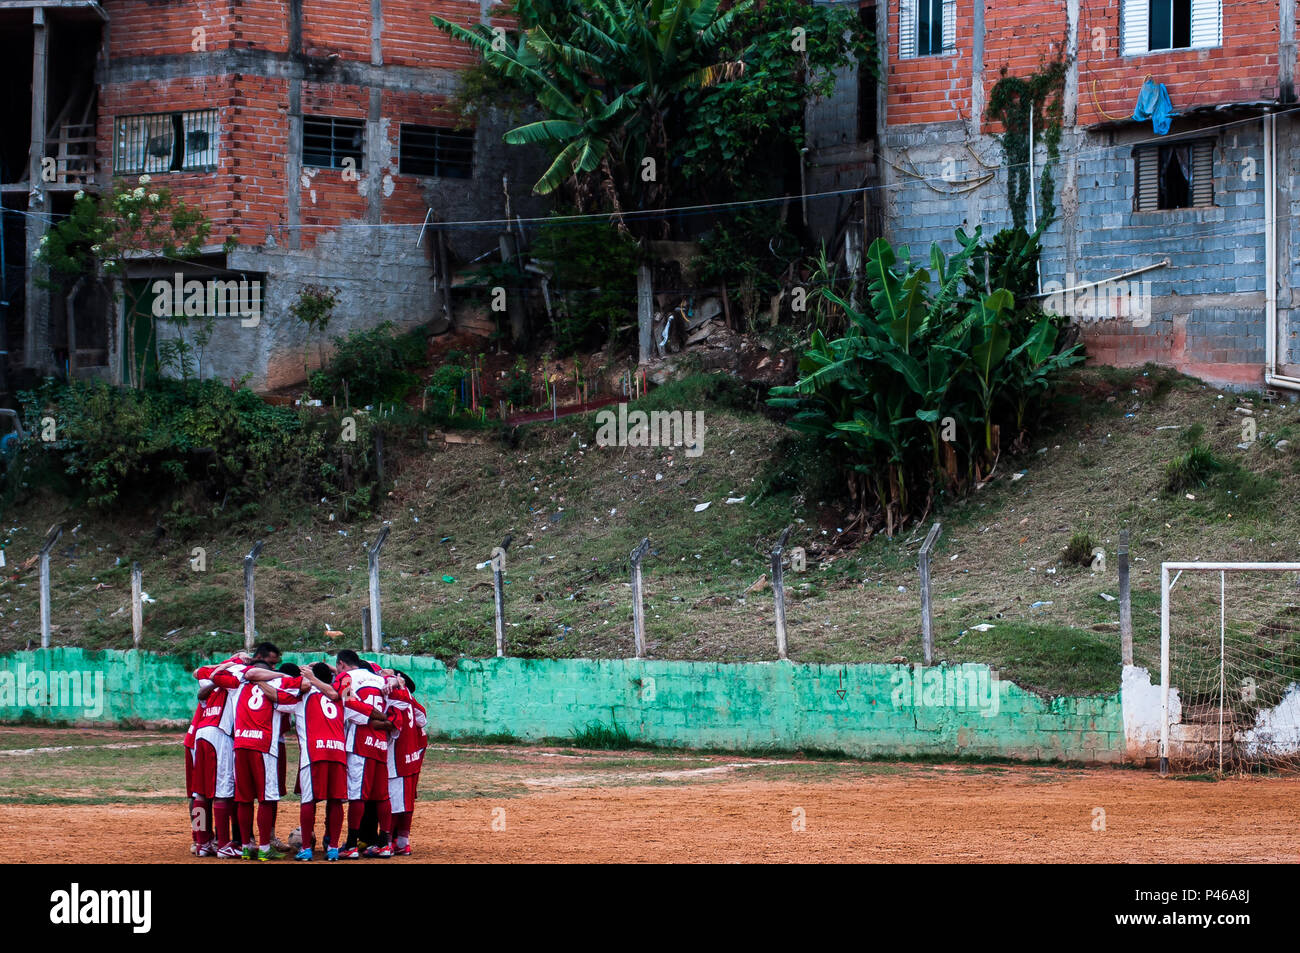 SÃO PAULO, SP - 27/09/2014: Futebol de Várzea - Jogo de várzea entre GE  Unidos do Panamericano e o 96, no campo da comunidade da Xurupita, na zona  oeste de São Paulo. (